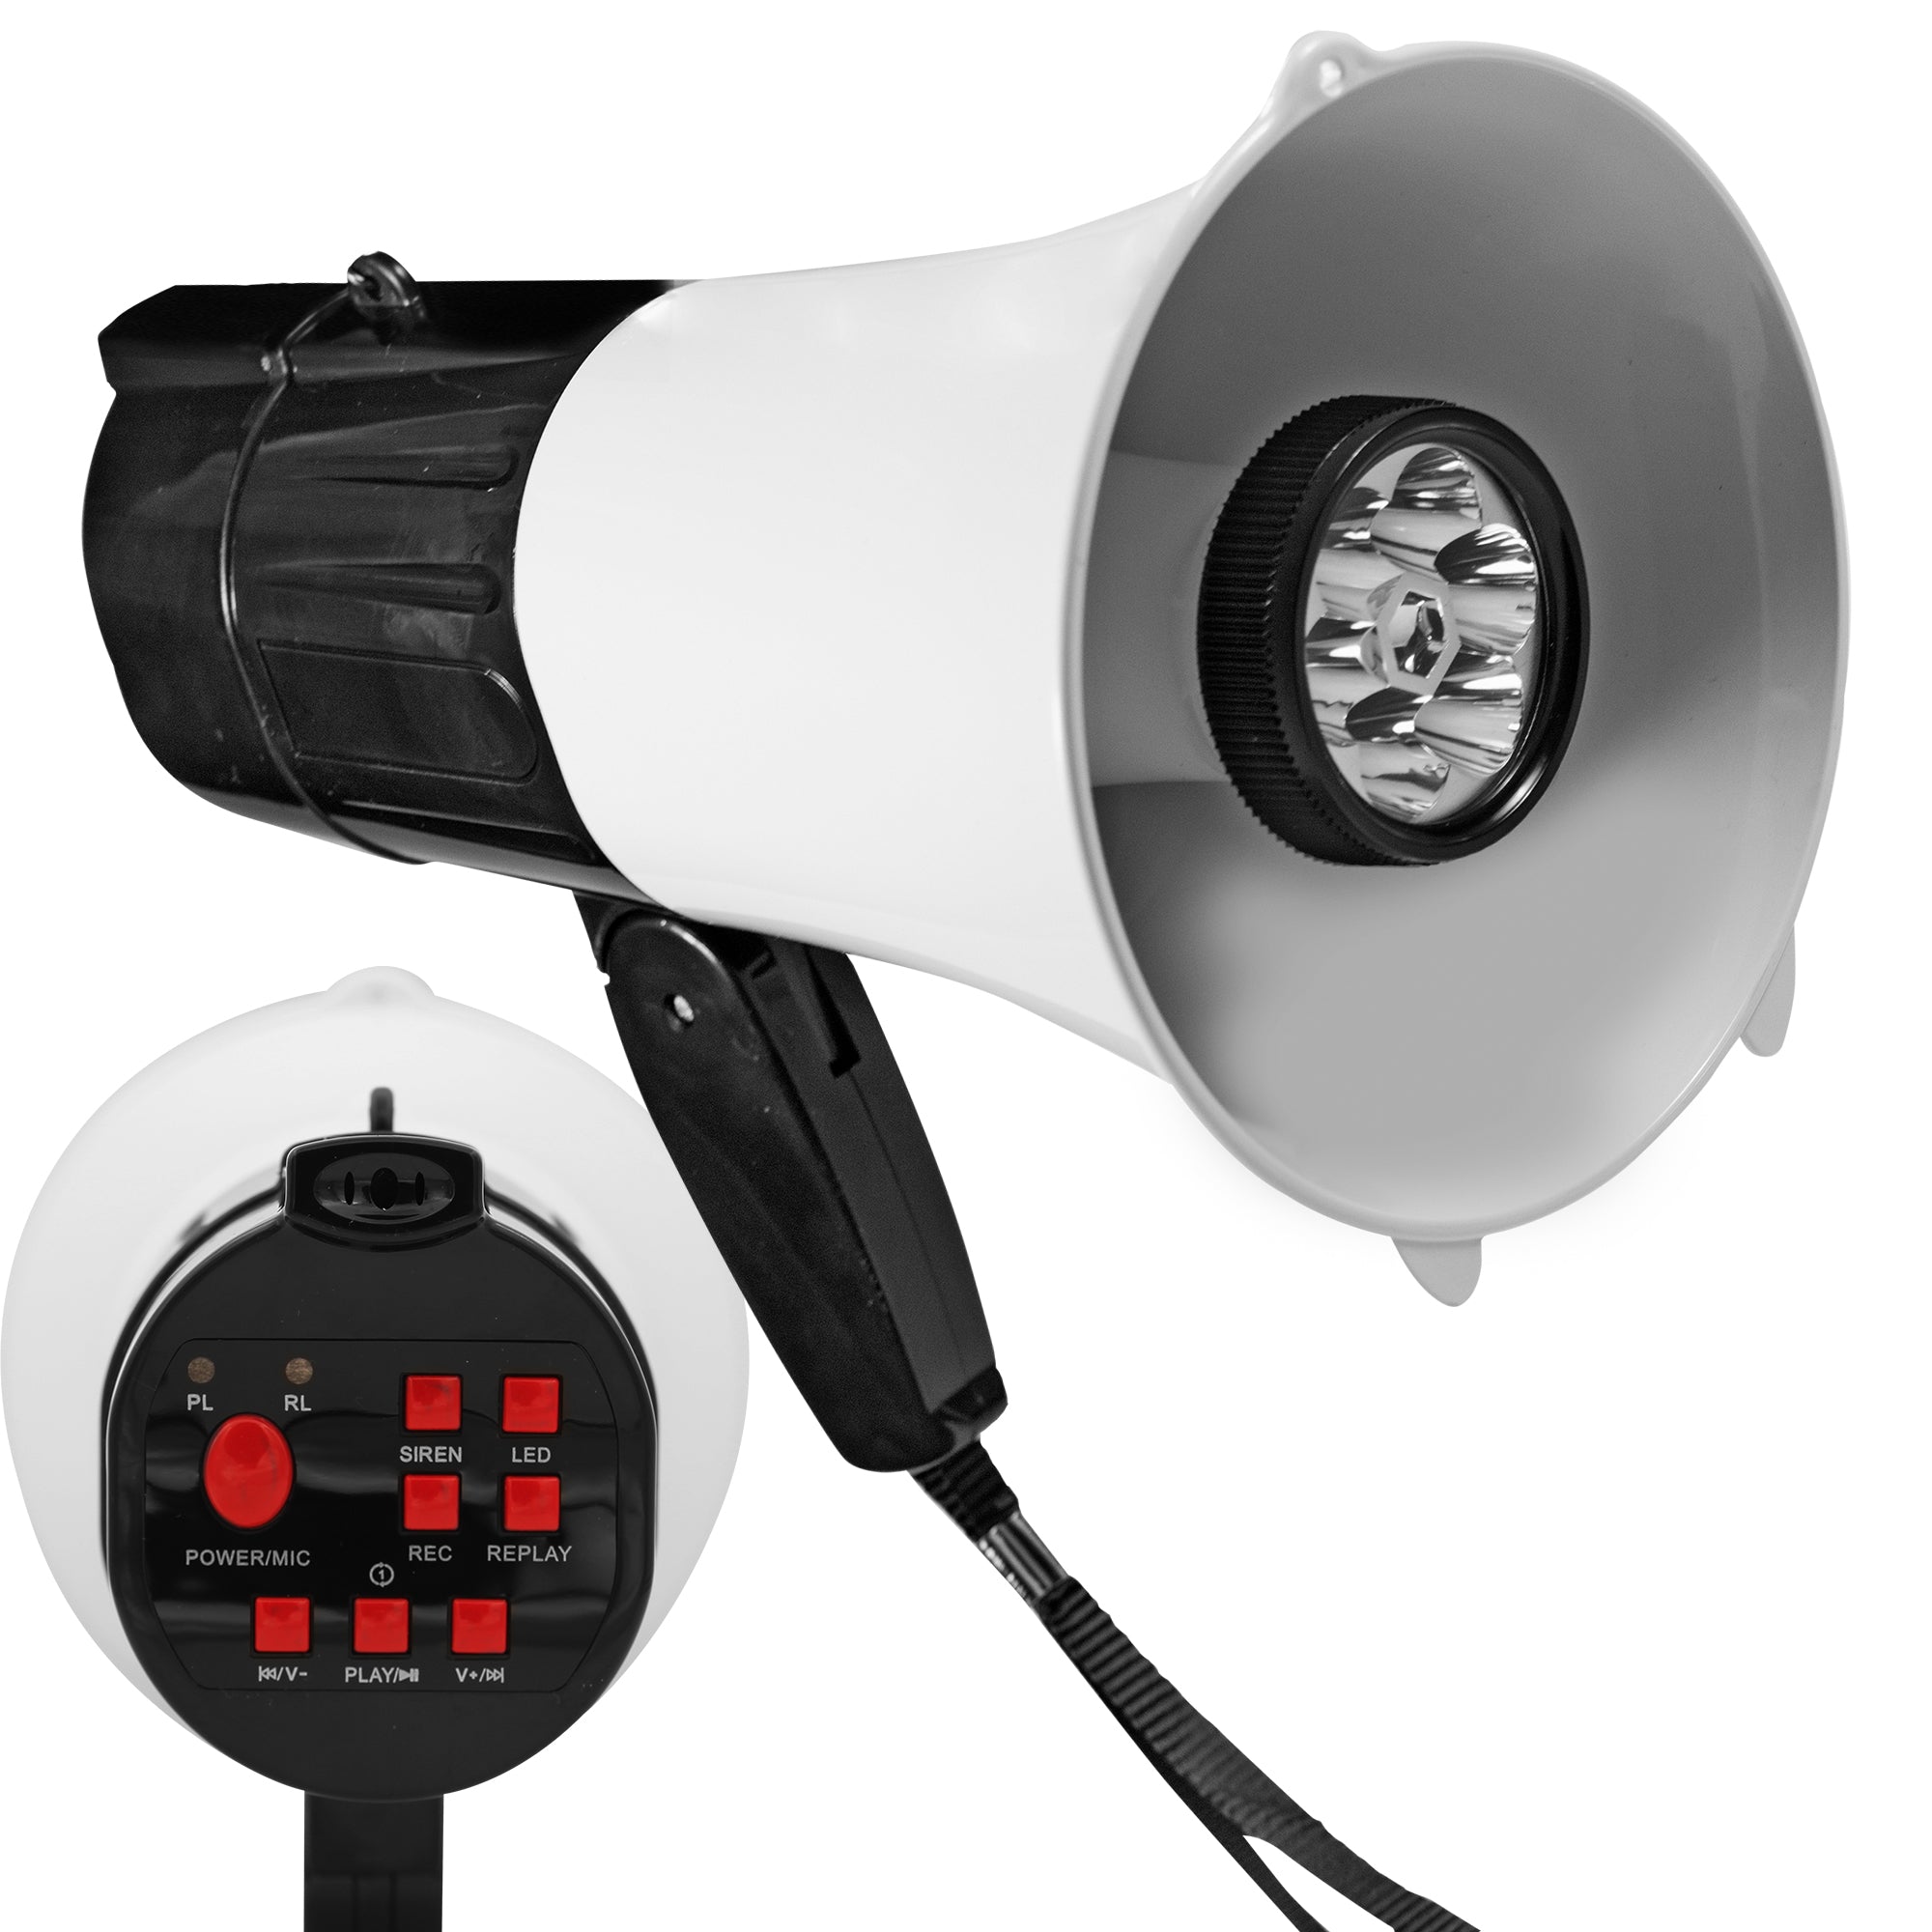 5 Core Megaphone Handheld with LED Lights Bullhorn Cheer Loudspeaker Bull Horn Speaker